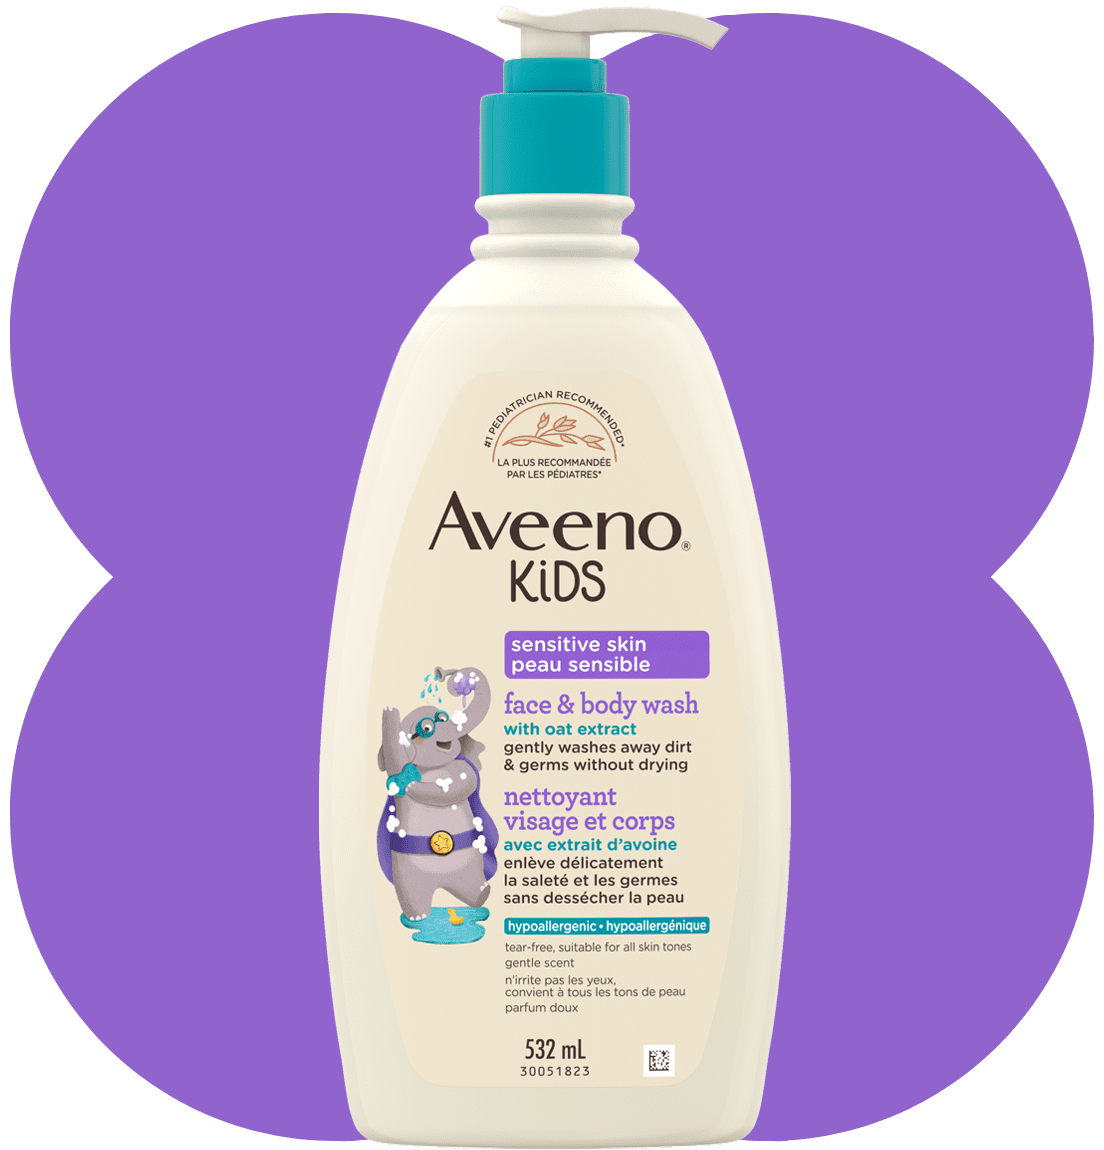 Flacon de 532 ml du nettoyant visage et corps Aveeno Kids peau sensible